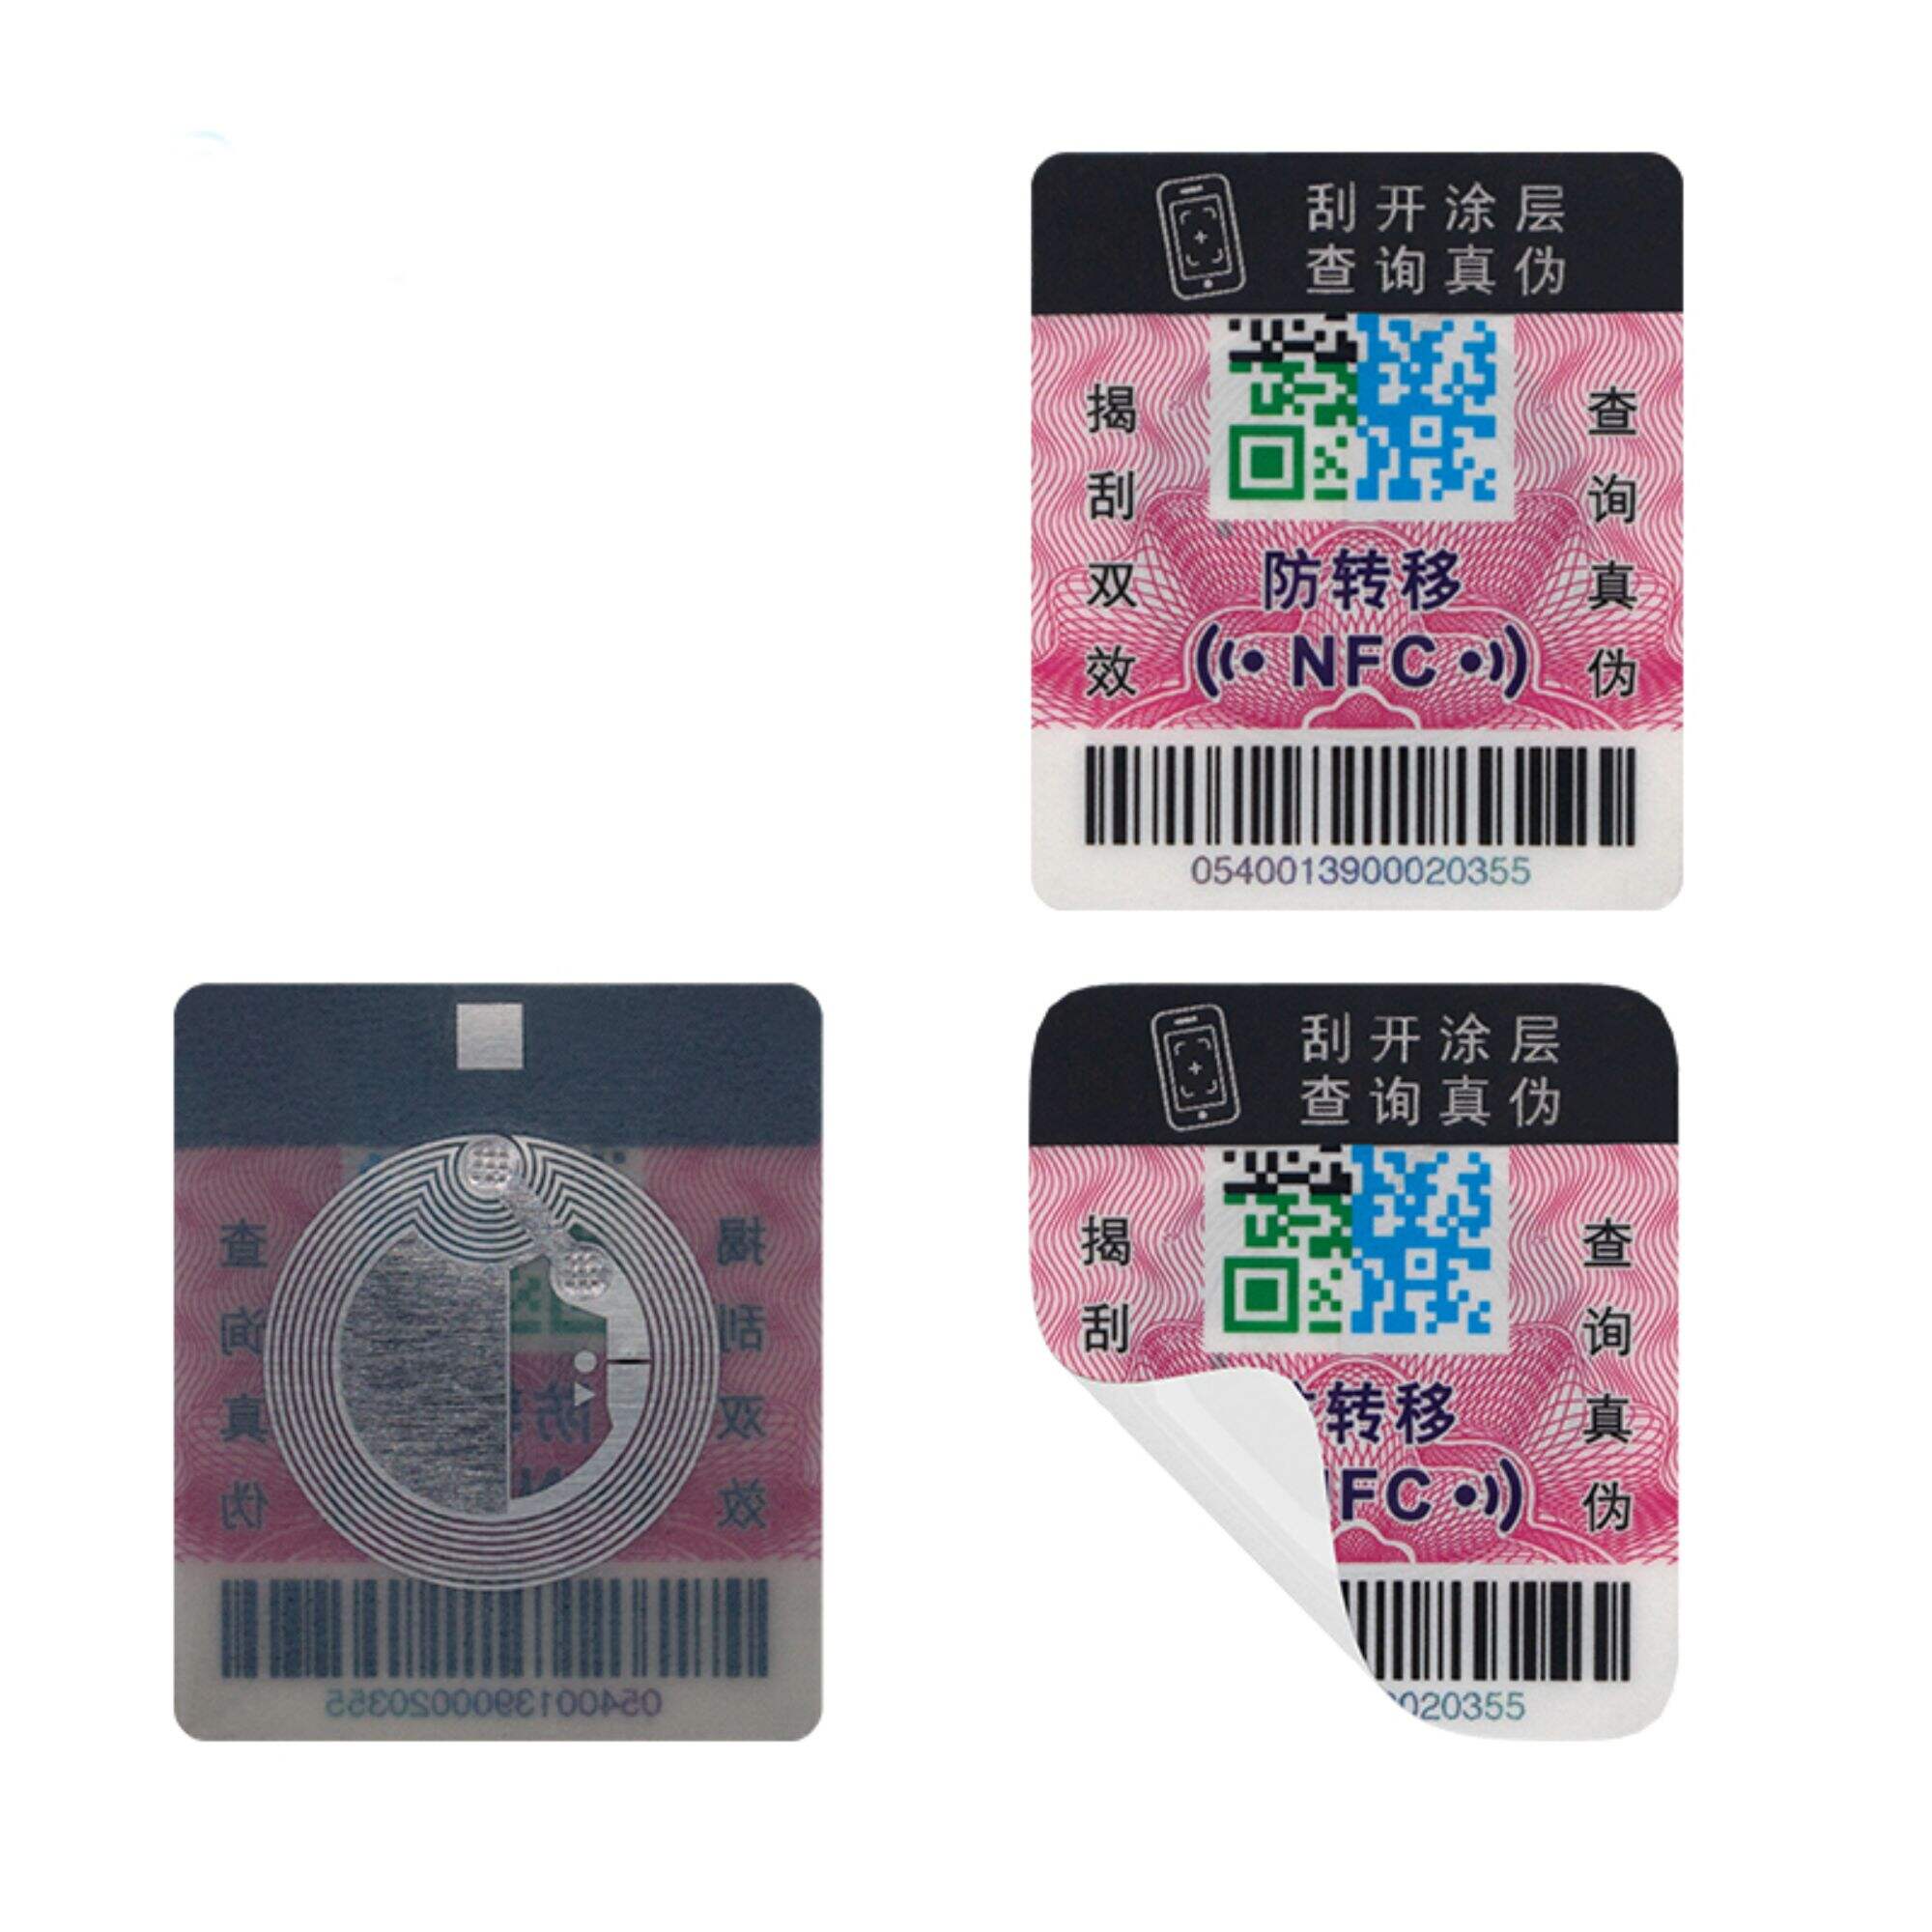 RFID Anti-counterfeit Tag